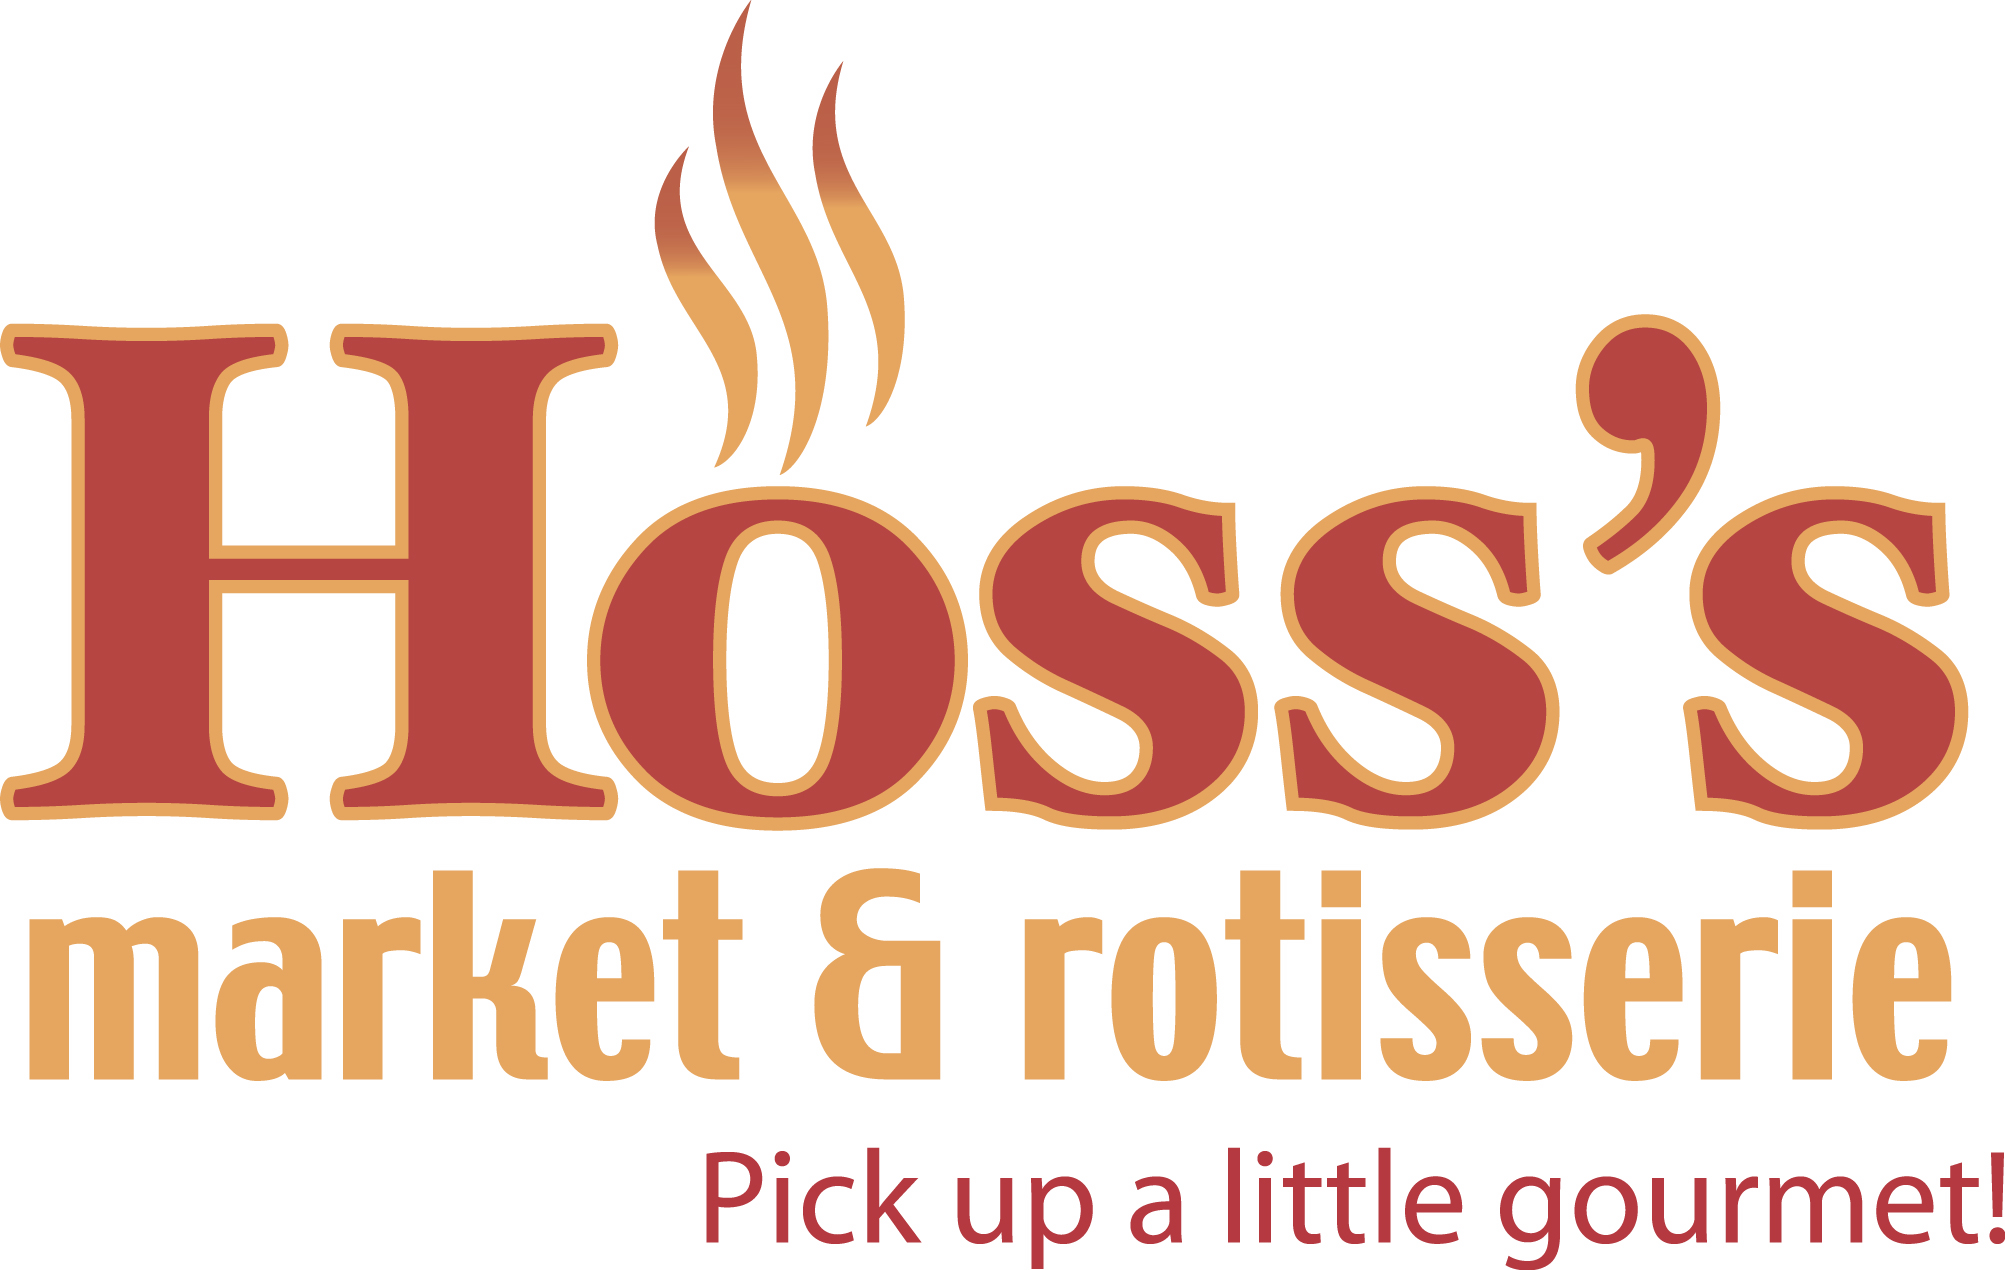 Hoss's Market and Rotisserie